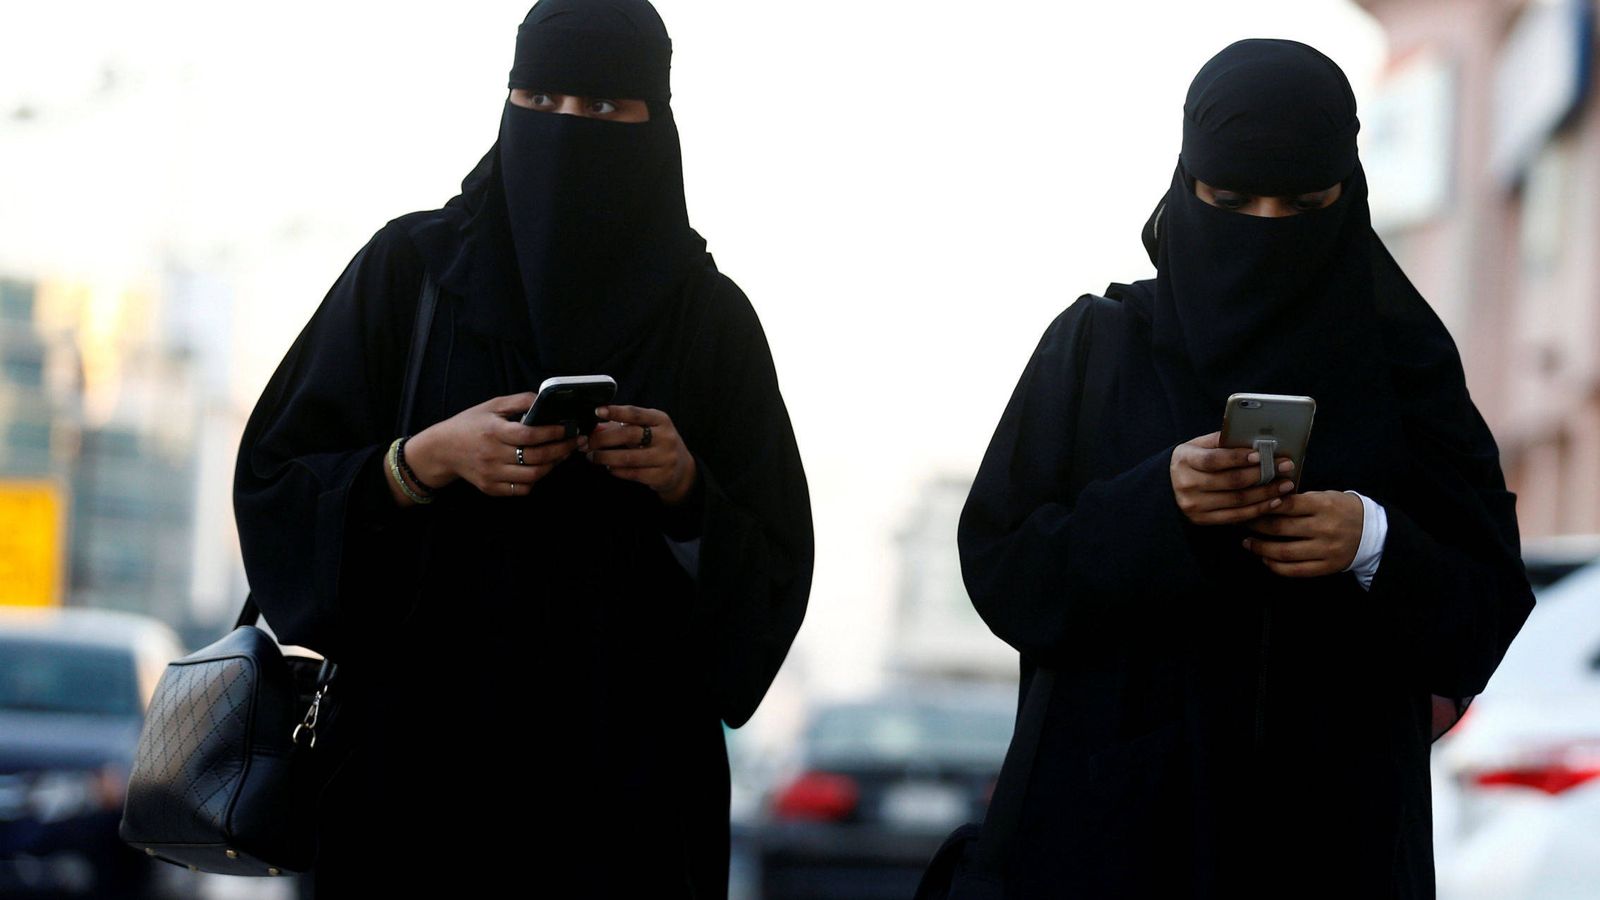 Qué es la 'abaya'? La prenda de la discordia en la visita española a Arabia  Saudí